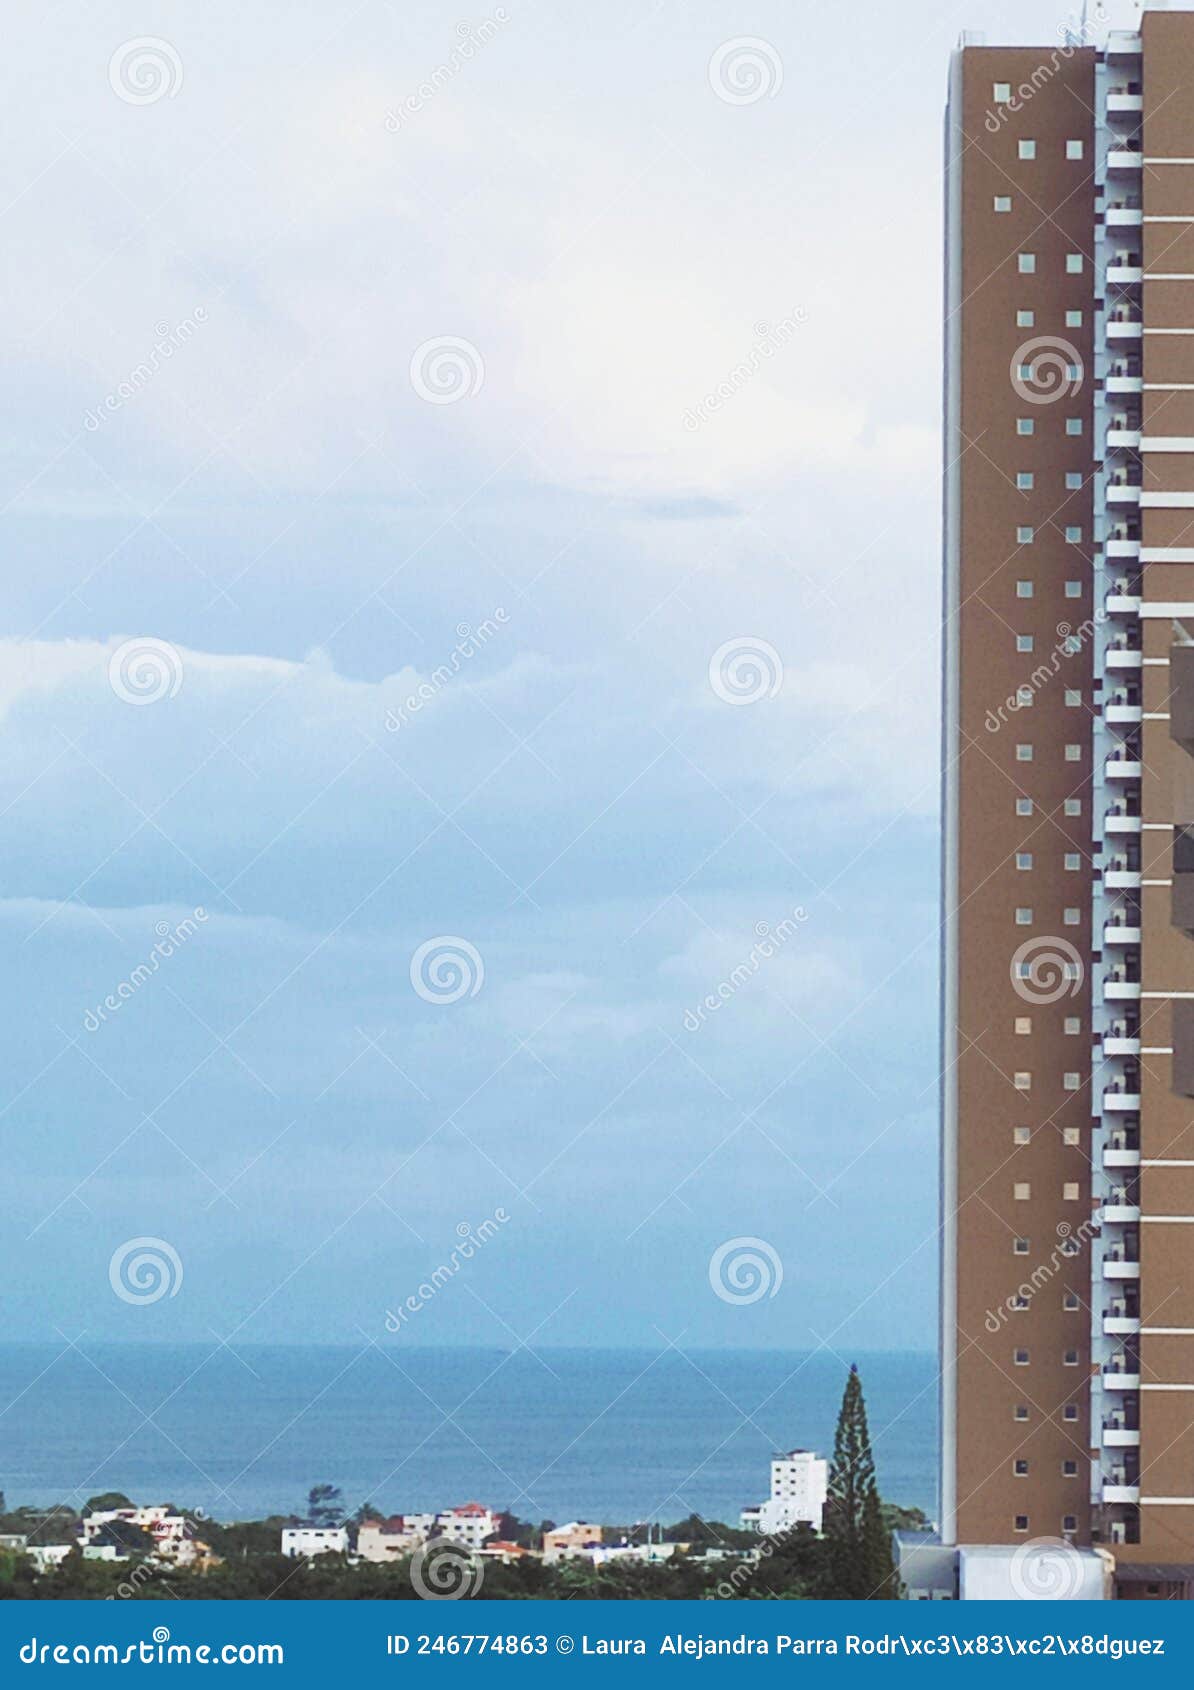 a tall building facing the sea. un alto edificio frente al mar.